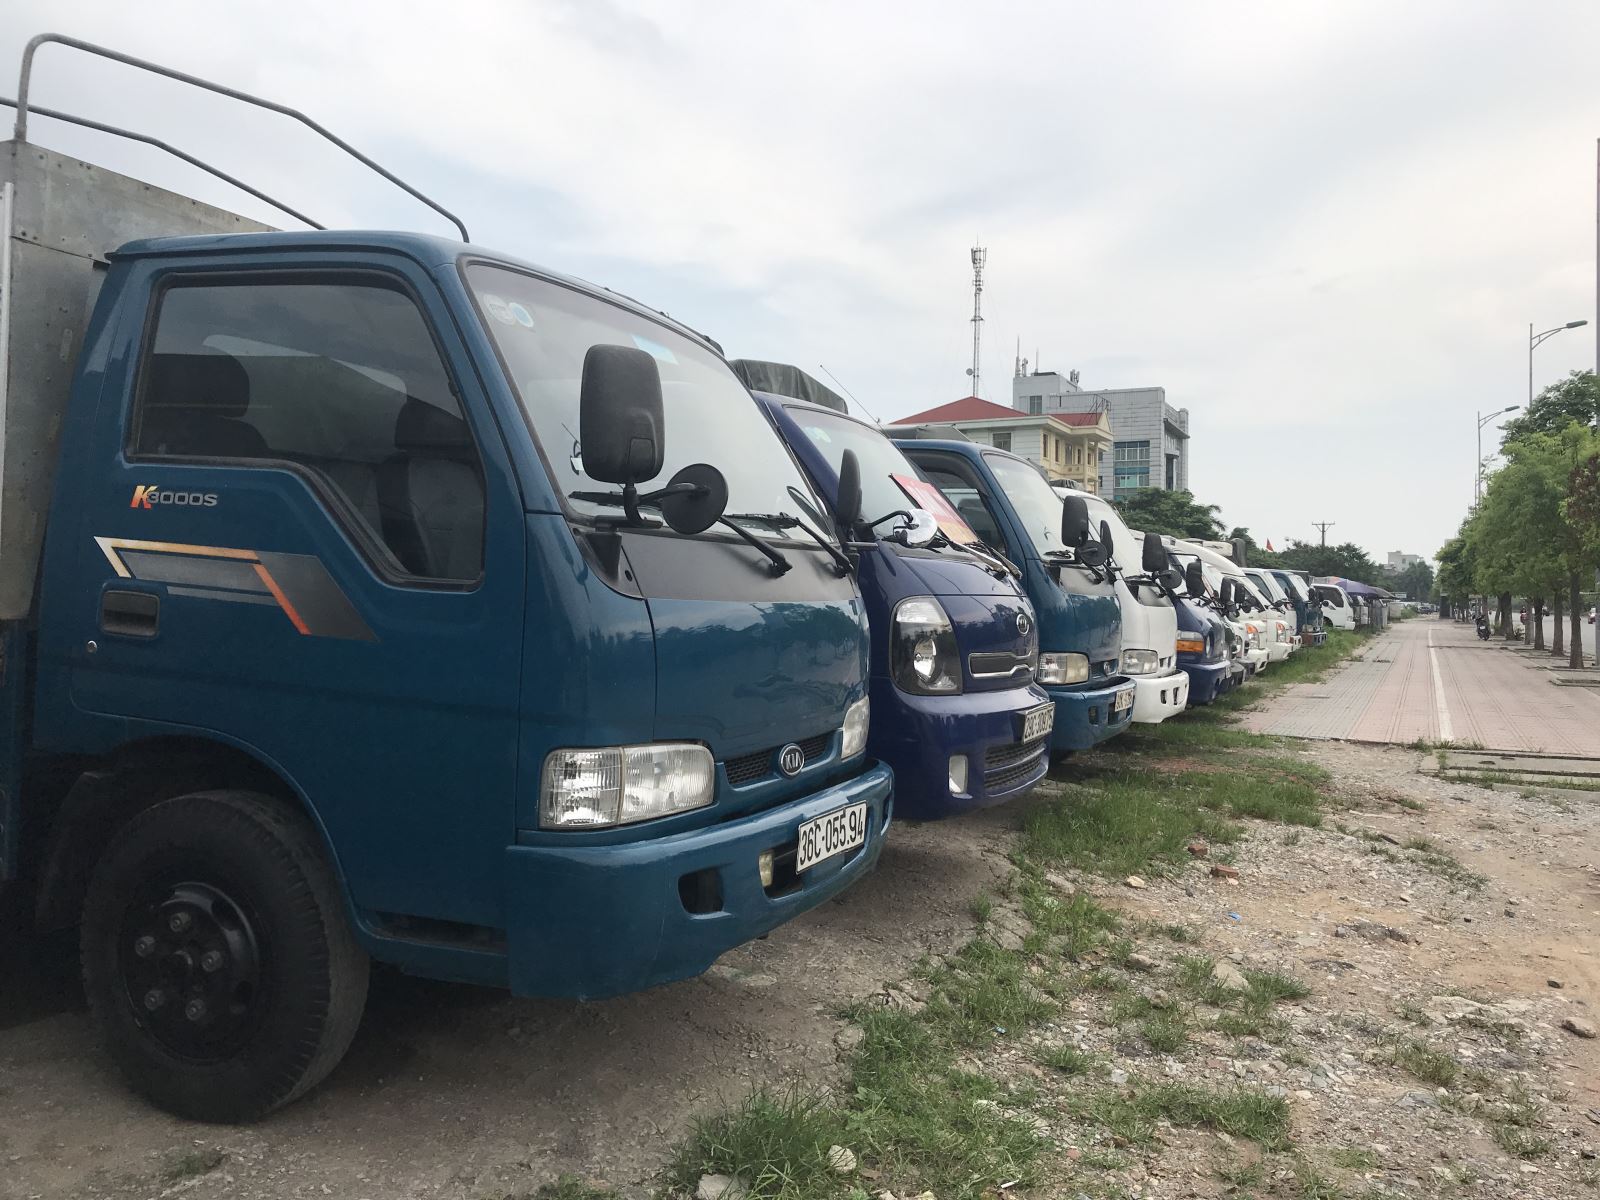 Mua bán xe tải cũ xe ben cũ ở Quảng Ninh